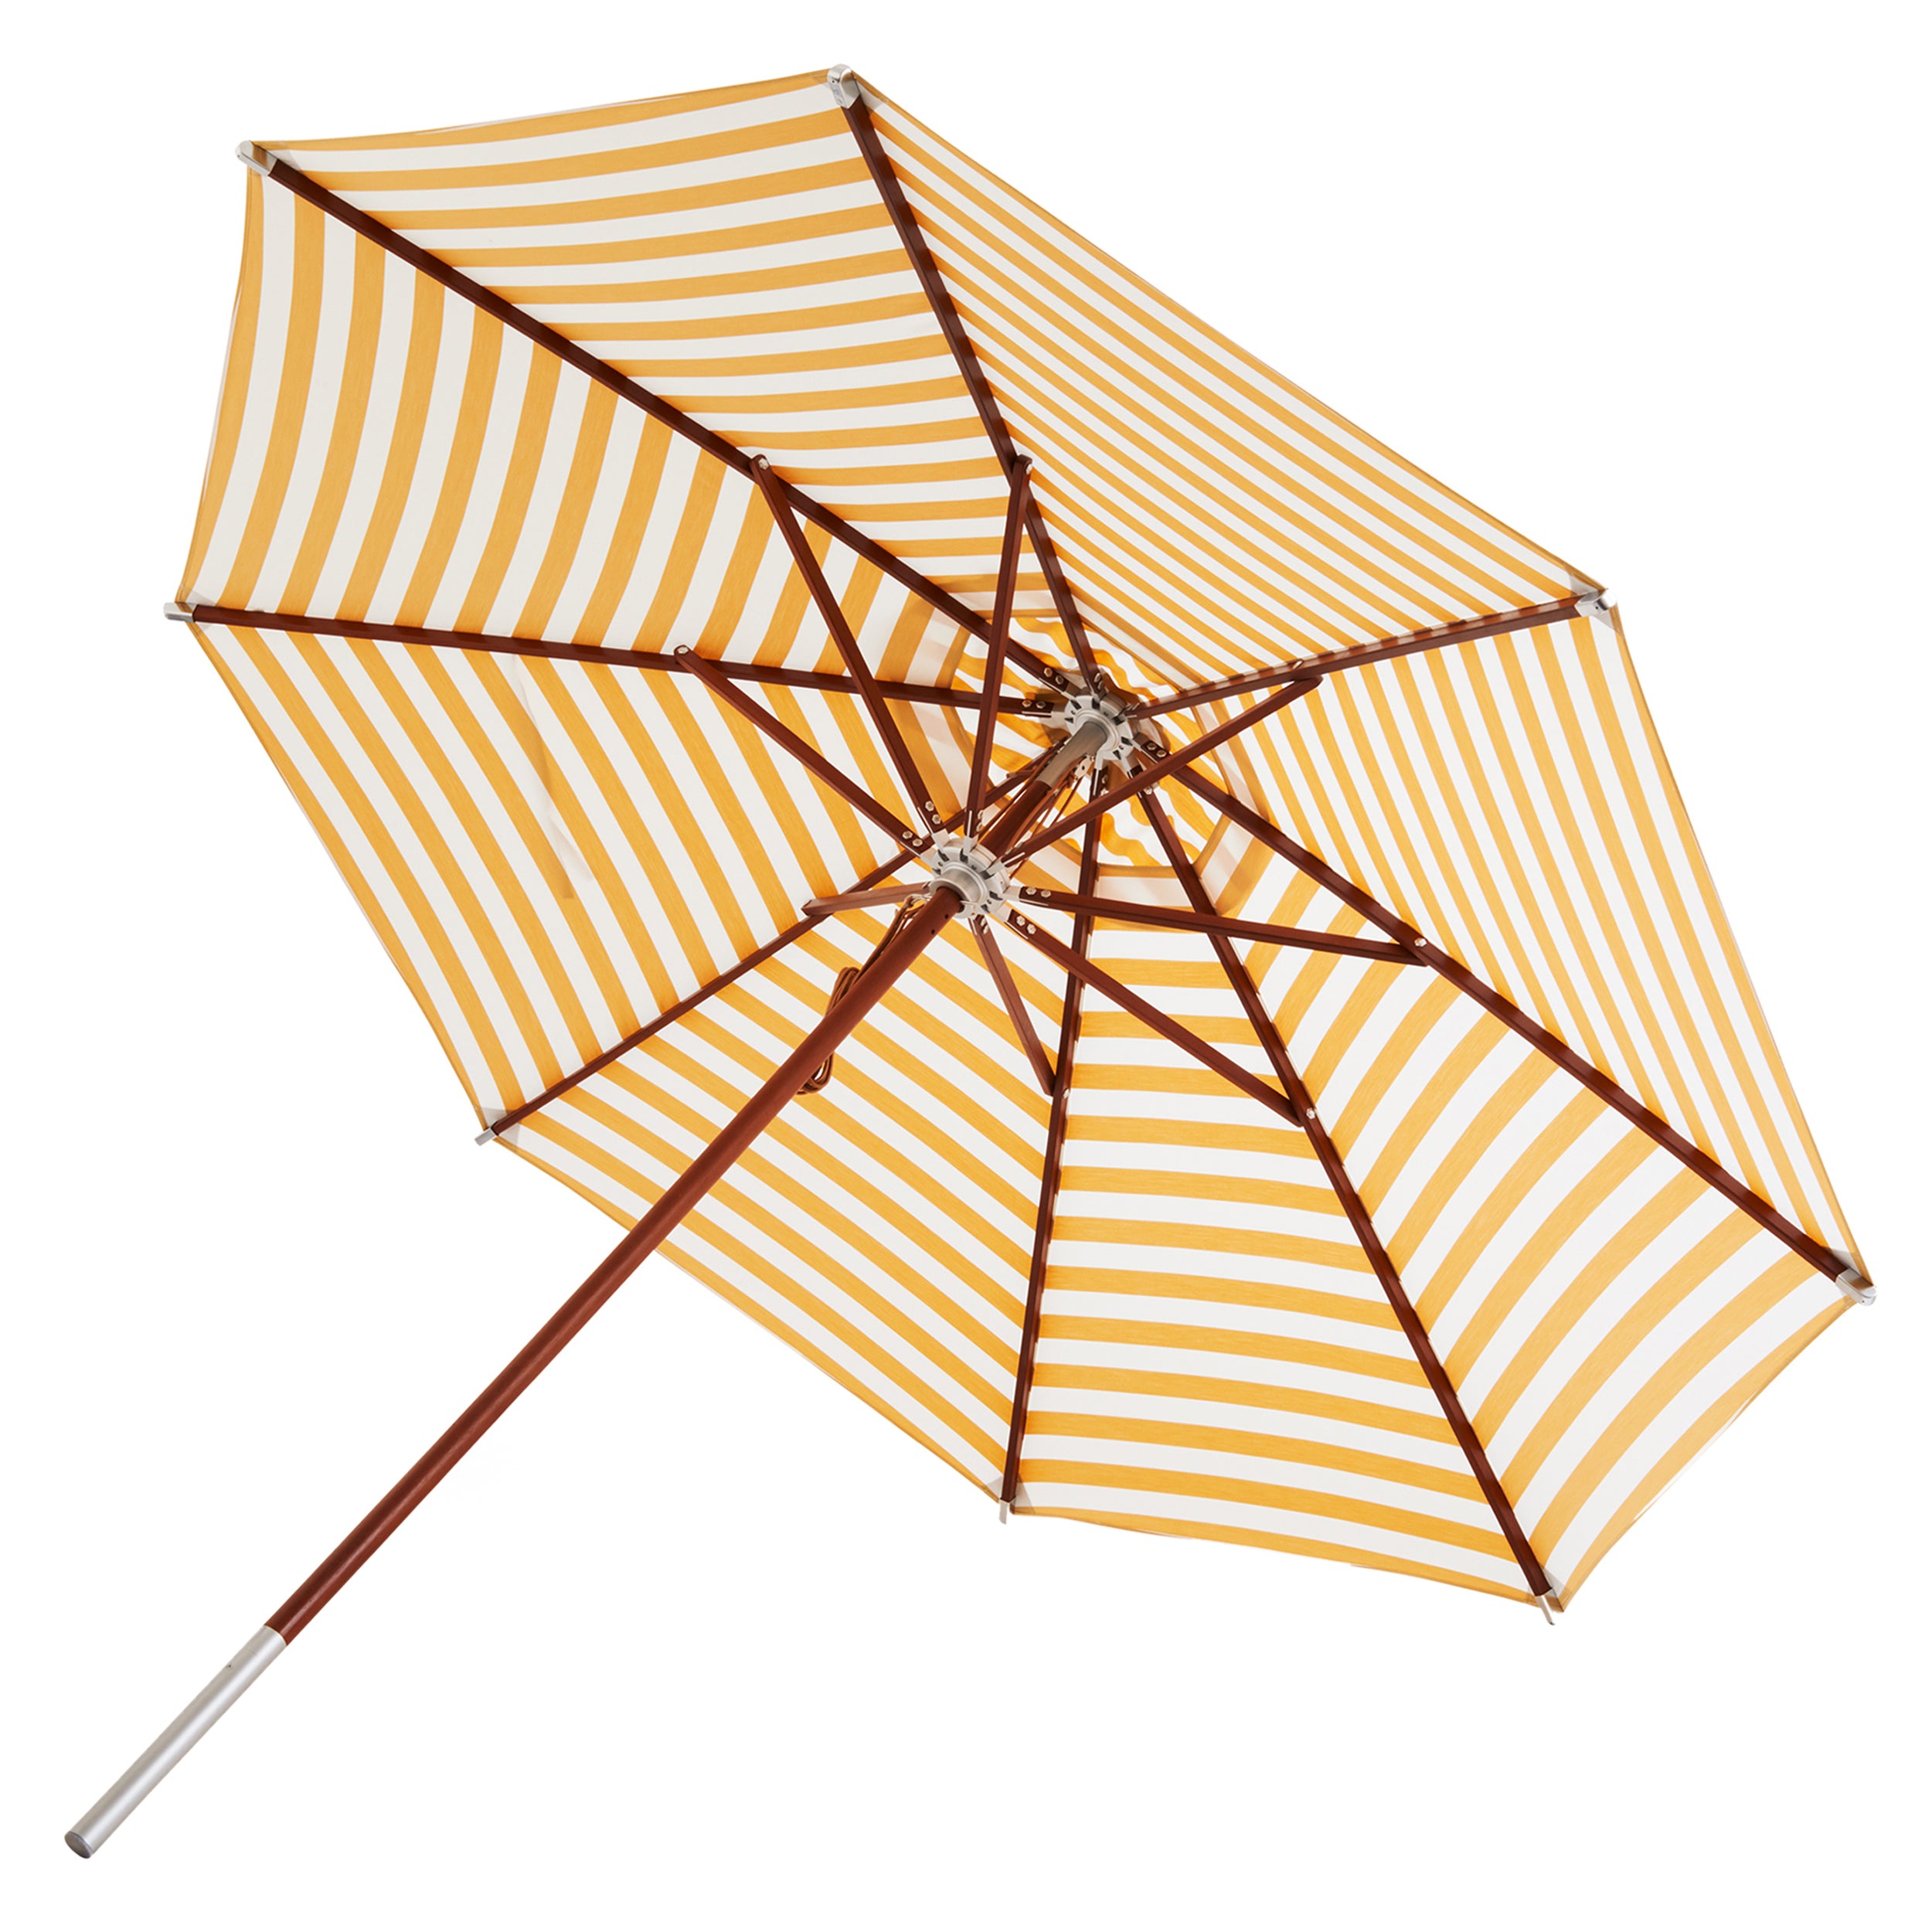 Atlantis Umbrella: Striped + Golden Yellow Stripes